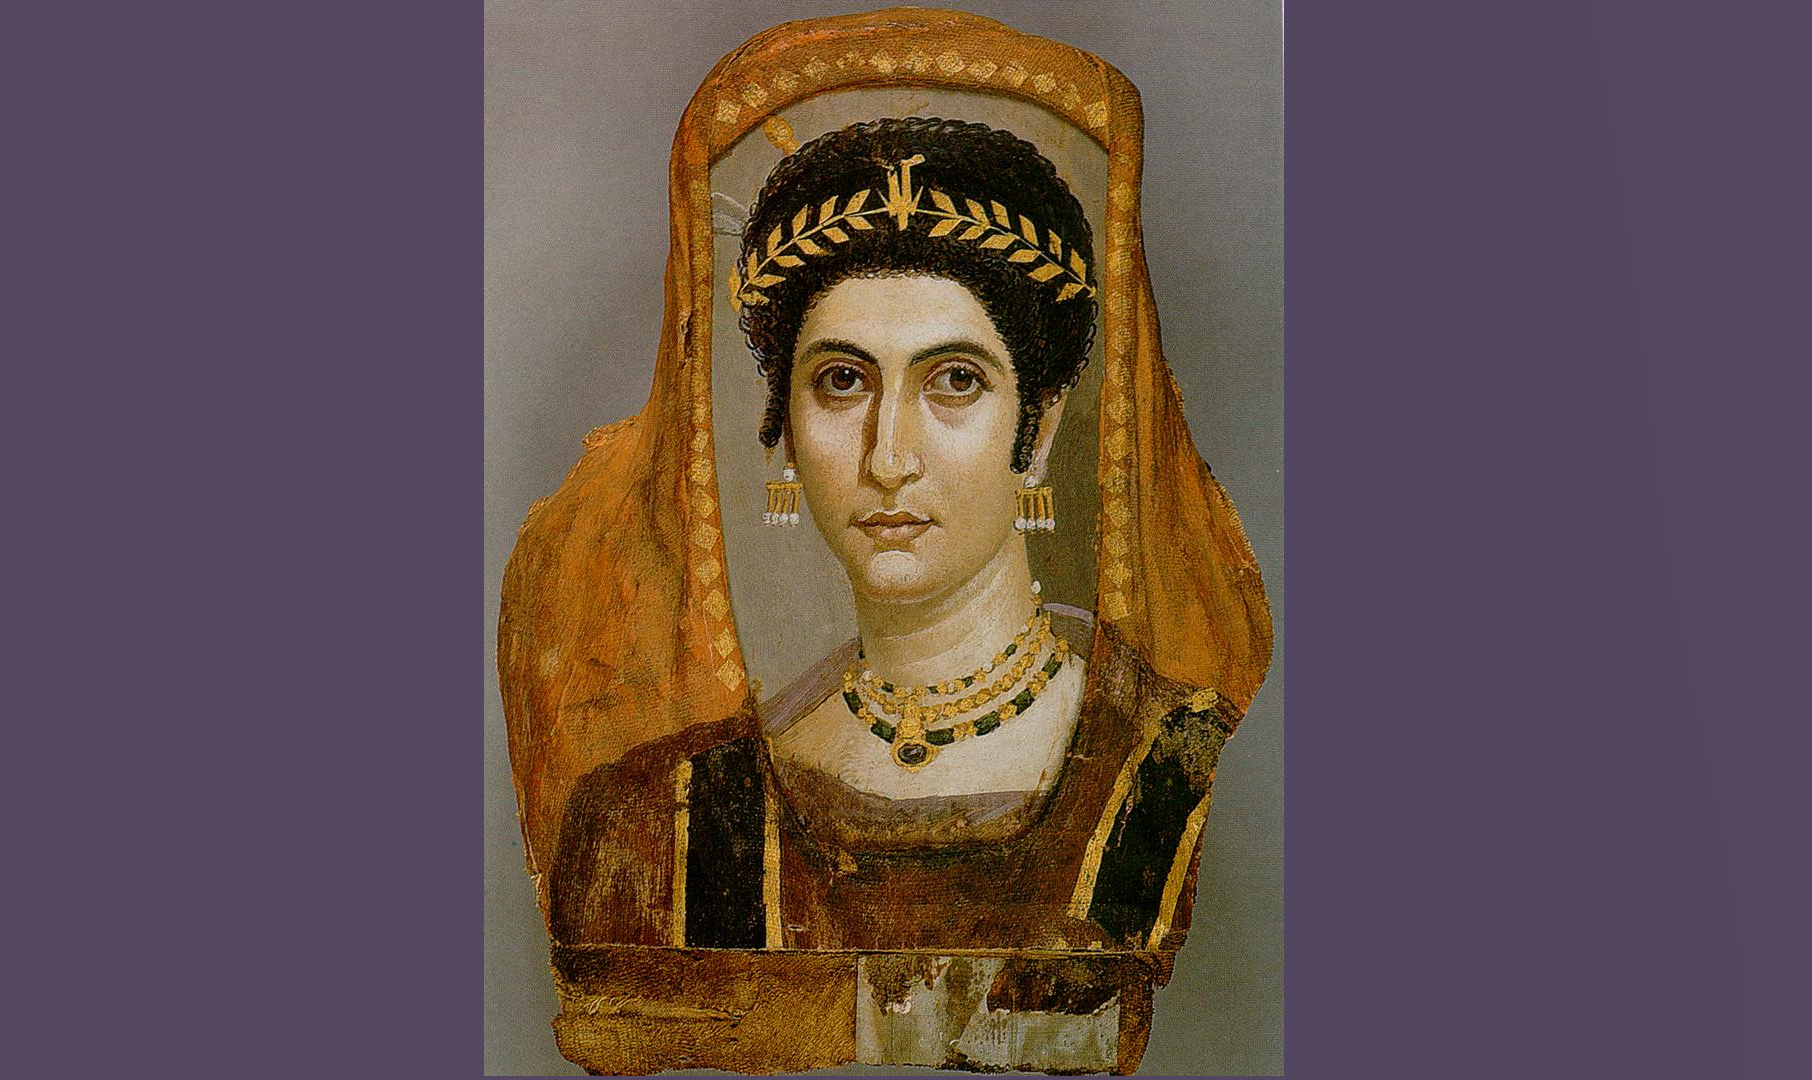 Фаюмський портрет жінки із зібрання Музею Гетті. 100-110 рр. Анкіронполь. Фото: Eloquence / Wikipedia, PD.